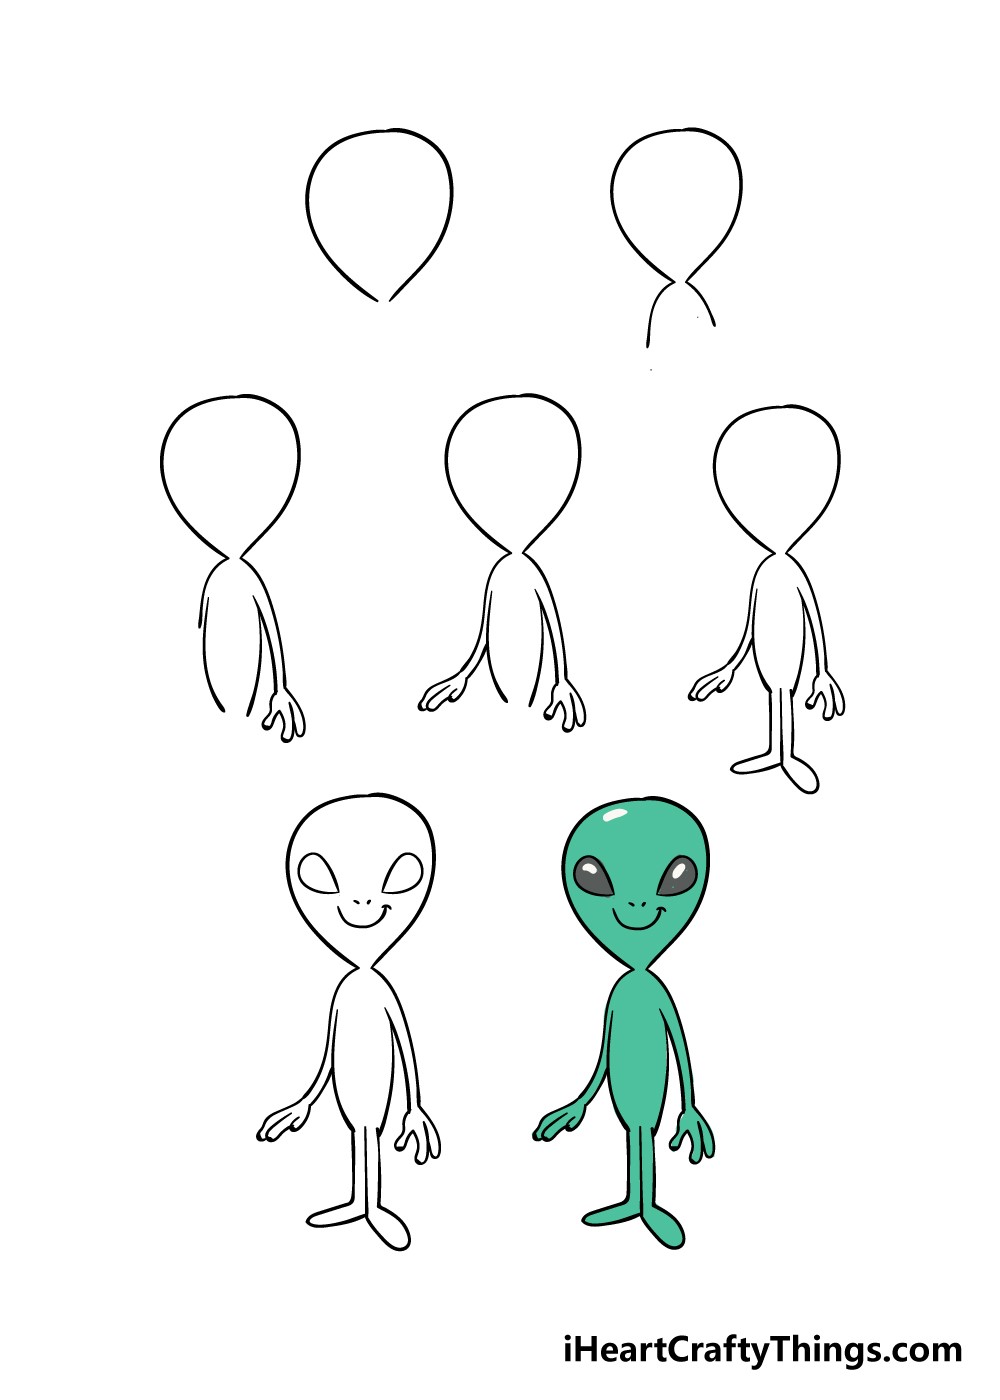 Alien idea 2 Drawing Ideas